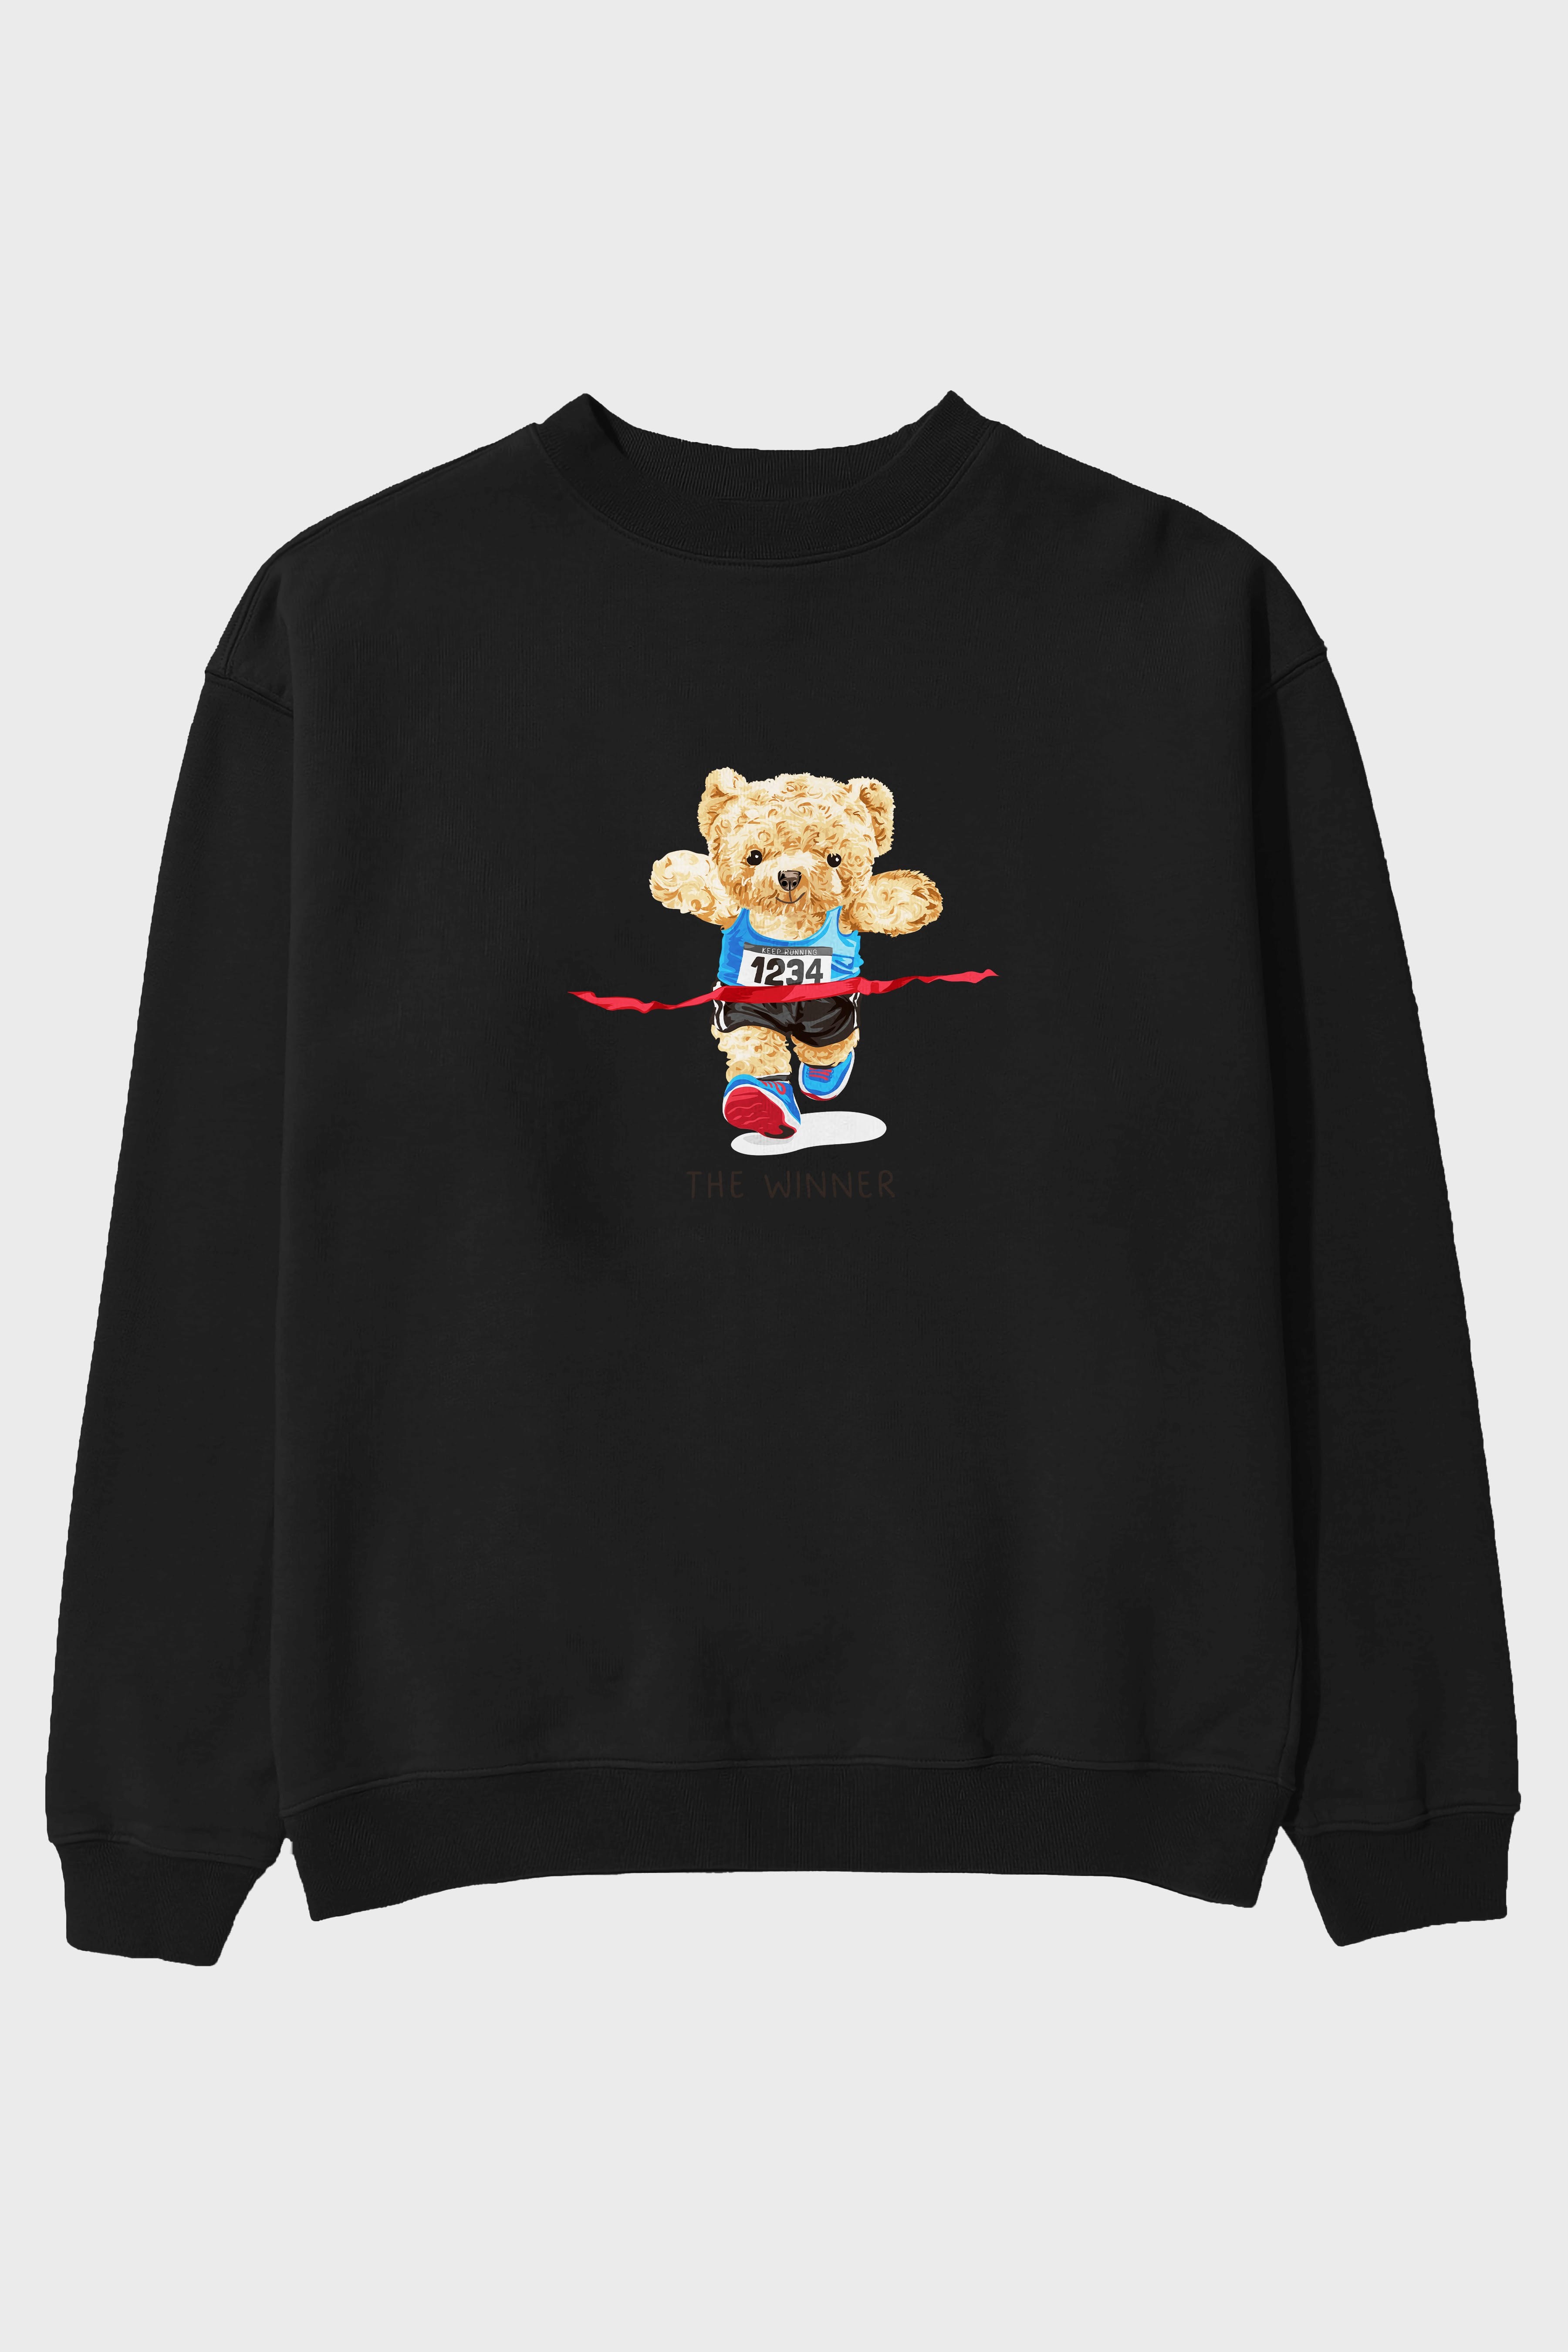 Teddy Bear The Winner Ön Baskılı Oversize Sweatshirt Erkek Kadın Unisex